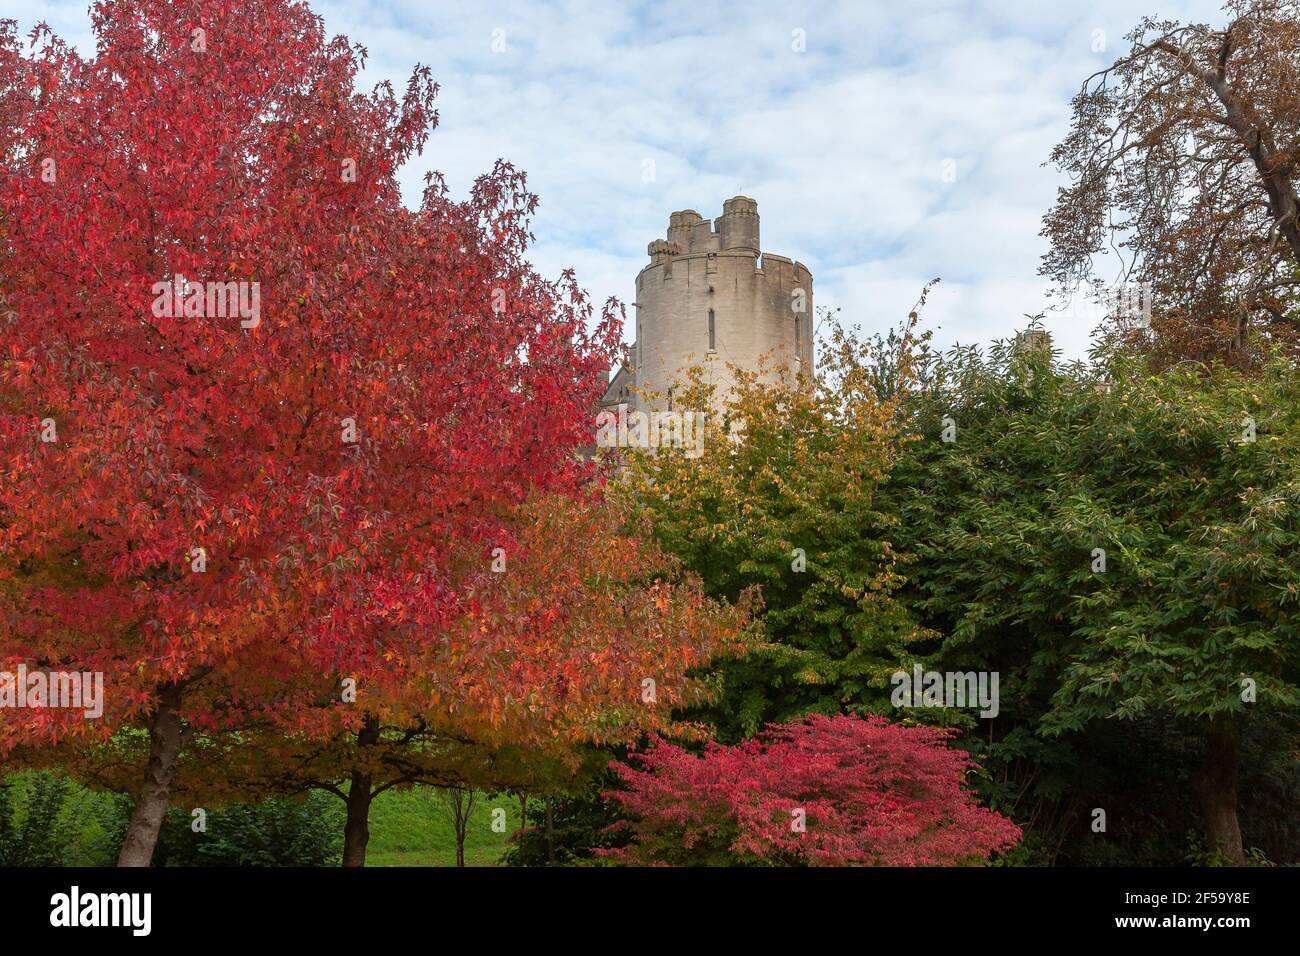 Une des tours du château d'Arundel, depuis les jardins du château, Arundel, West Sussex, Angleterre, Royaume-Uni : sucrine américaine (Liquidambar styraciflua) en premier plan Banque D'Images